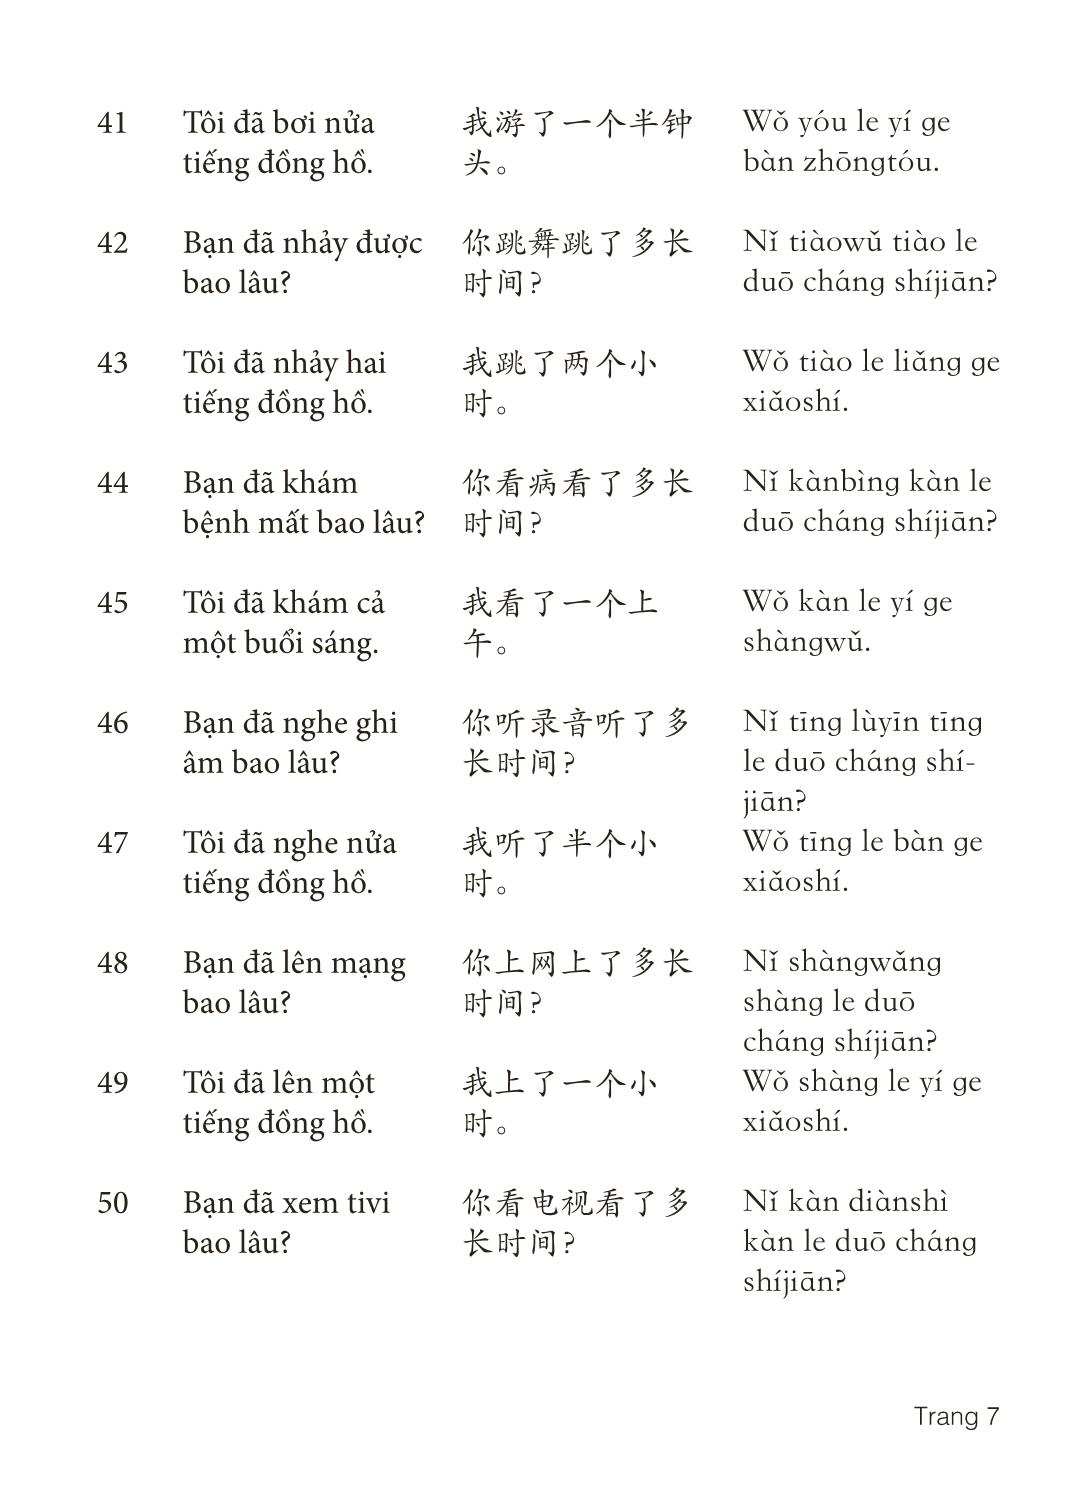 3000 Câu đàm thoại tiếng Hoa - Phần 13 trang 7